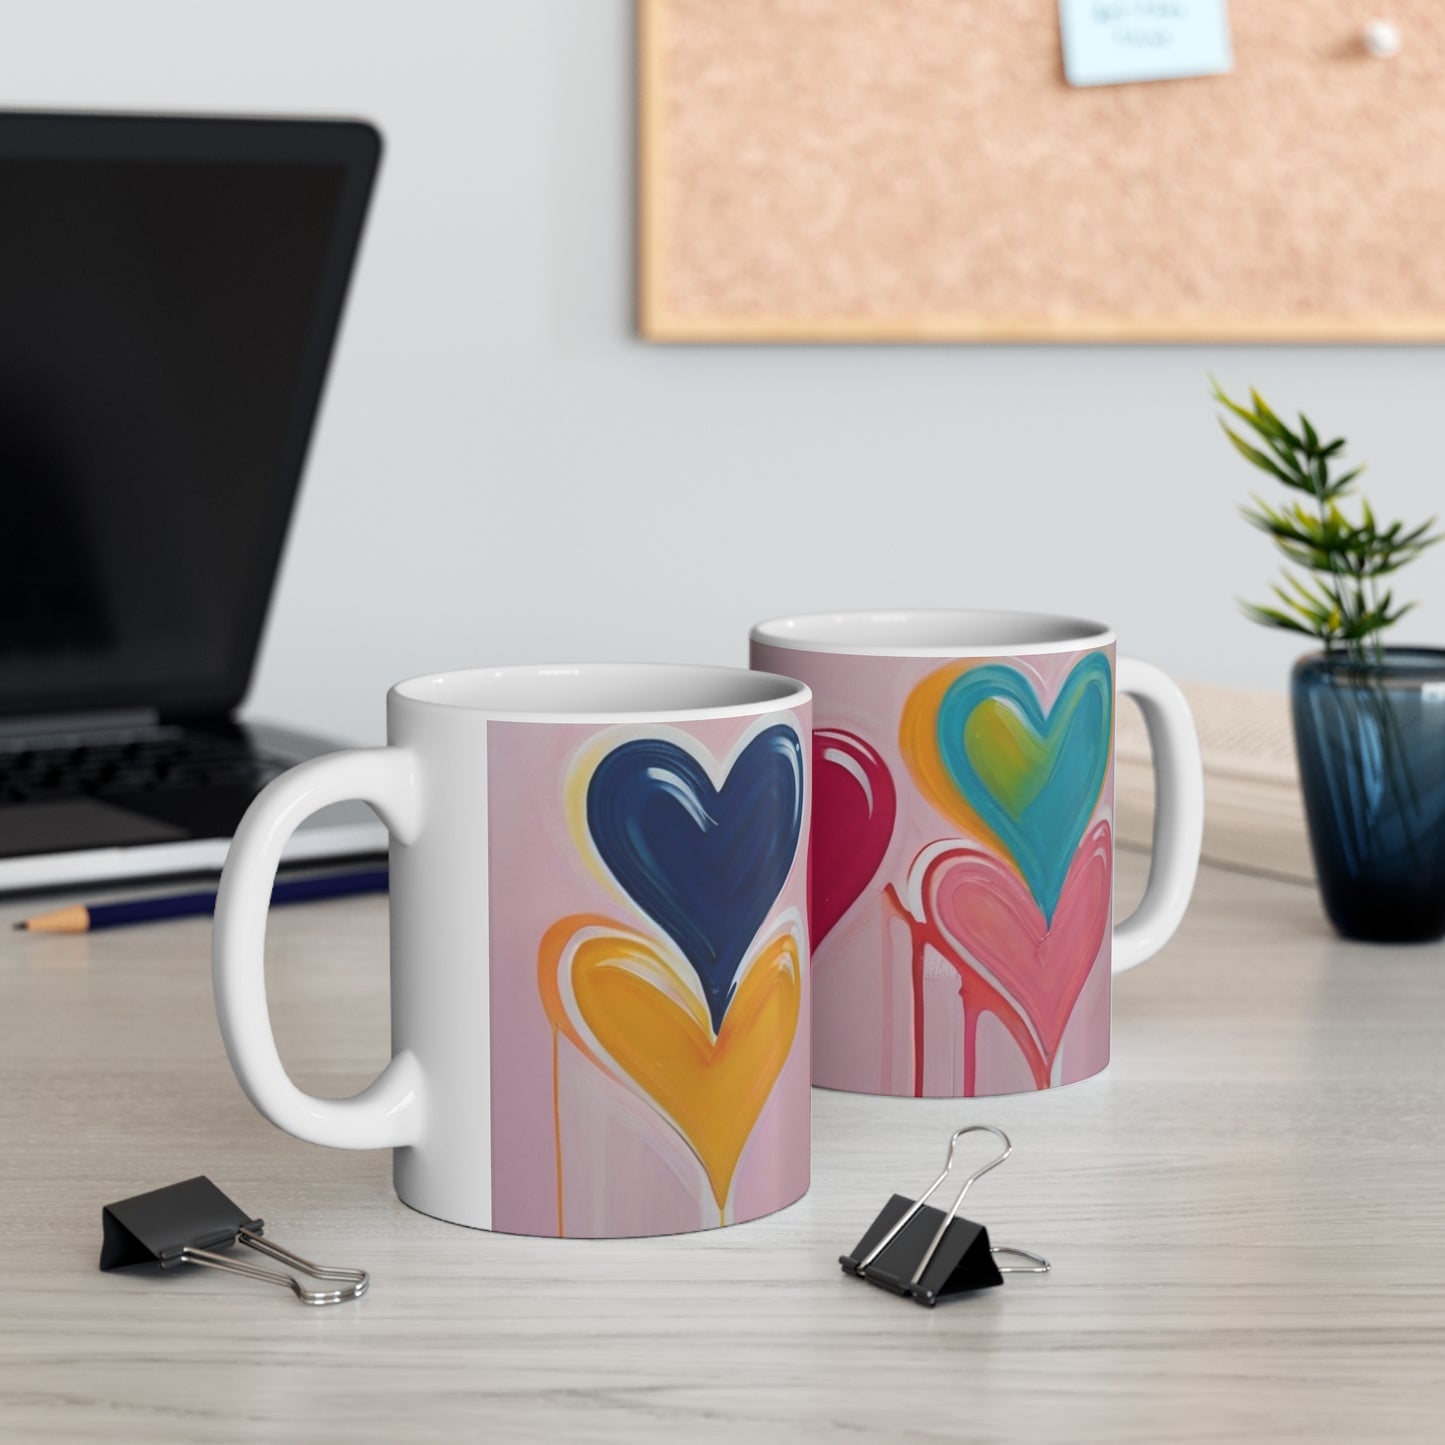 Multicoloured Love Hearts Mug - Ceramic Coffee Mug 11oz